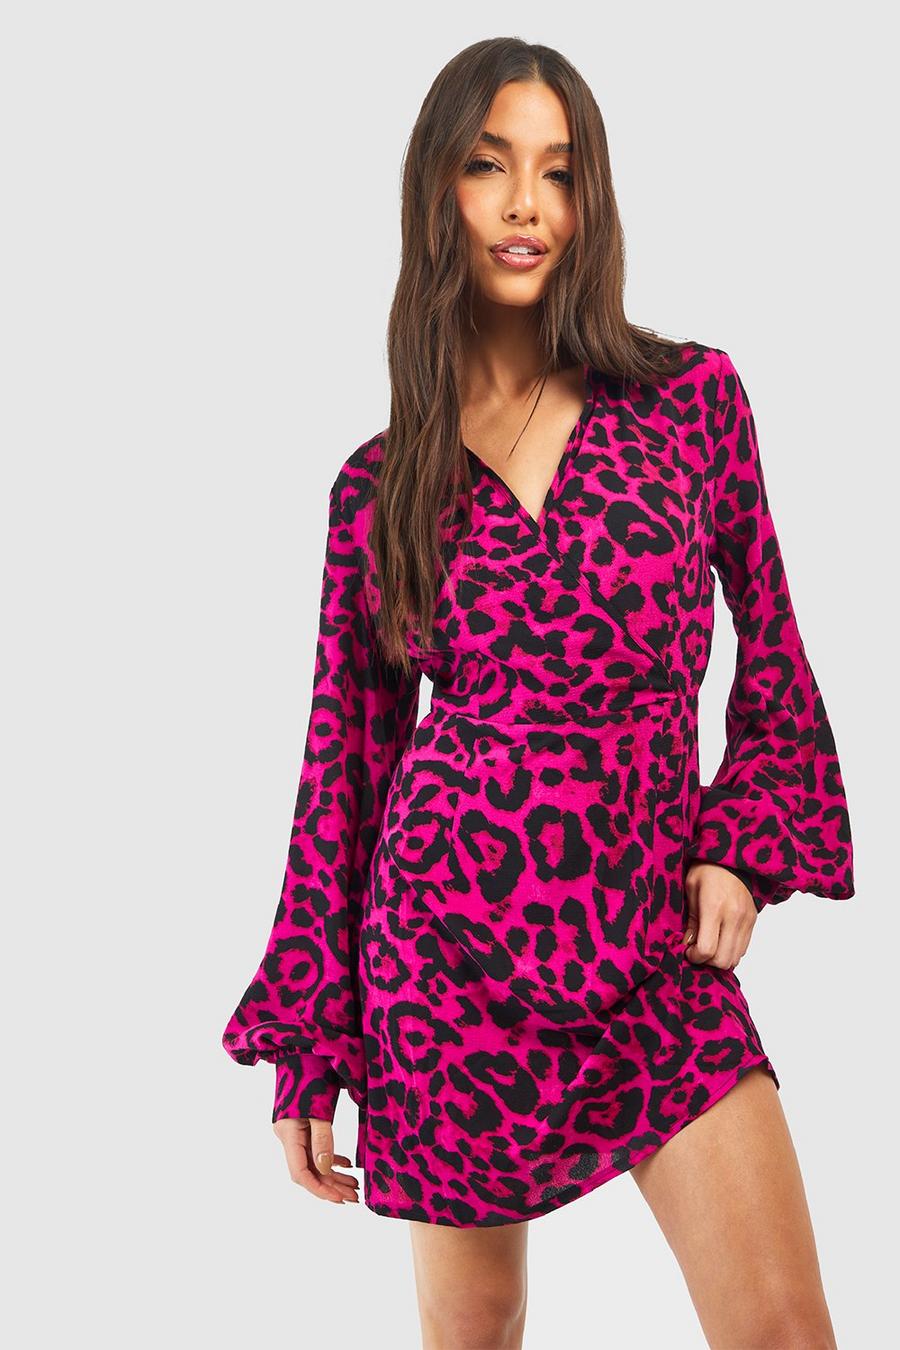 Mini-Hemdkleid mit Leopardenprint, Hot pink